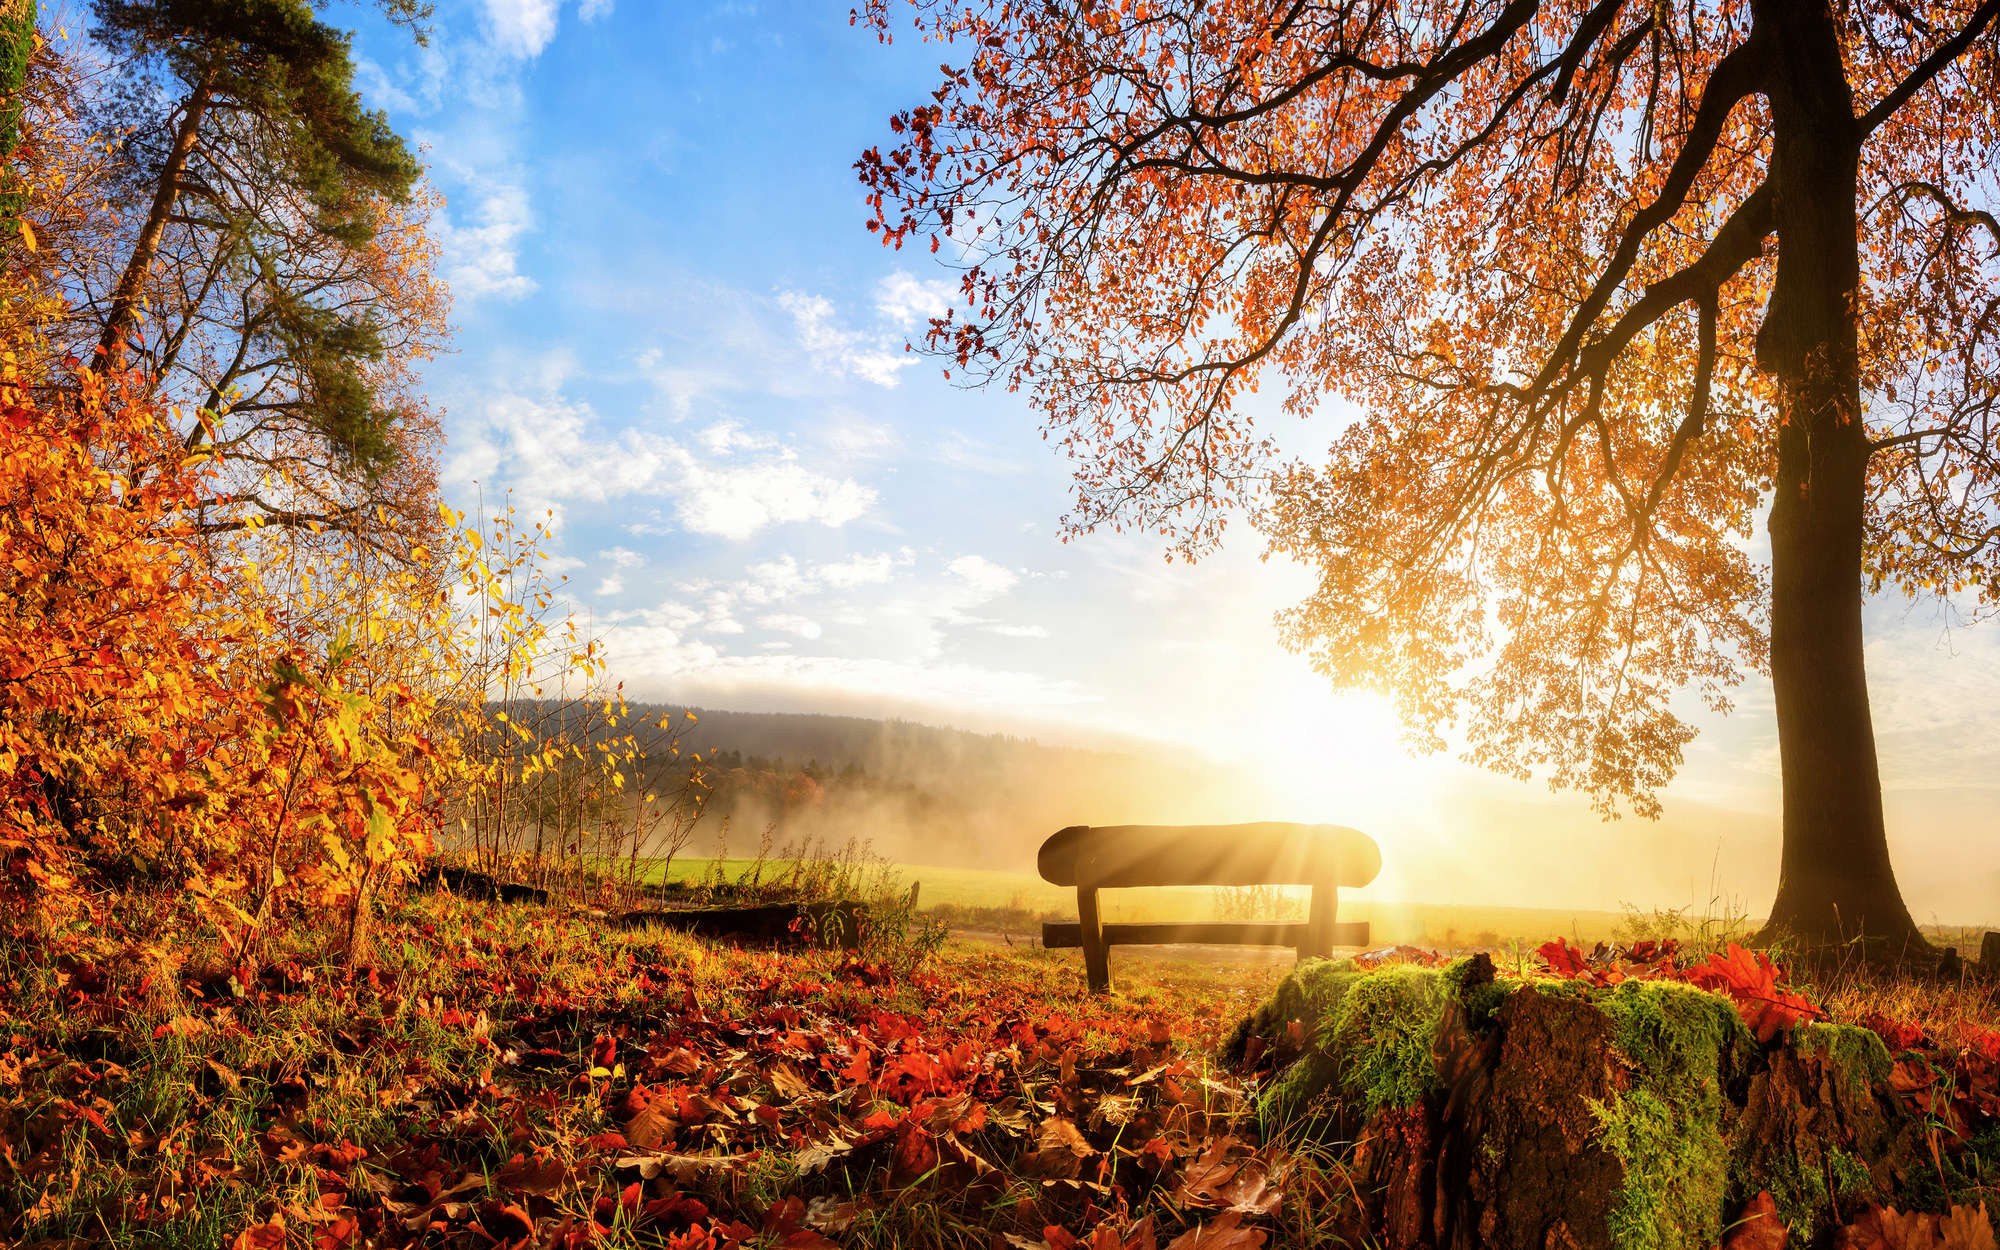             Fotomural Banco en el bosque en una mañana de otoño - tejido no tejido liso de alta calidad
        